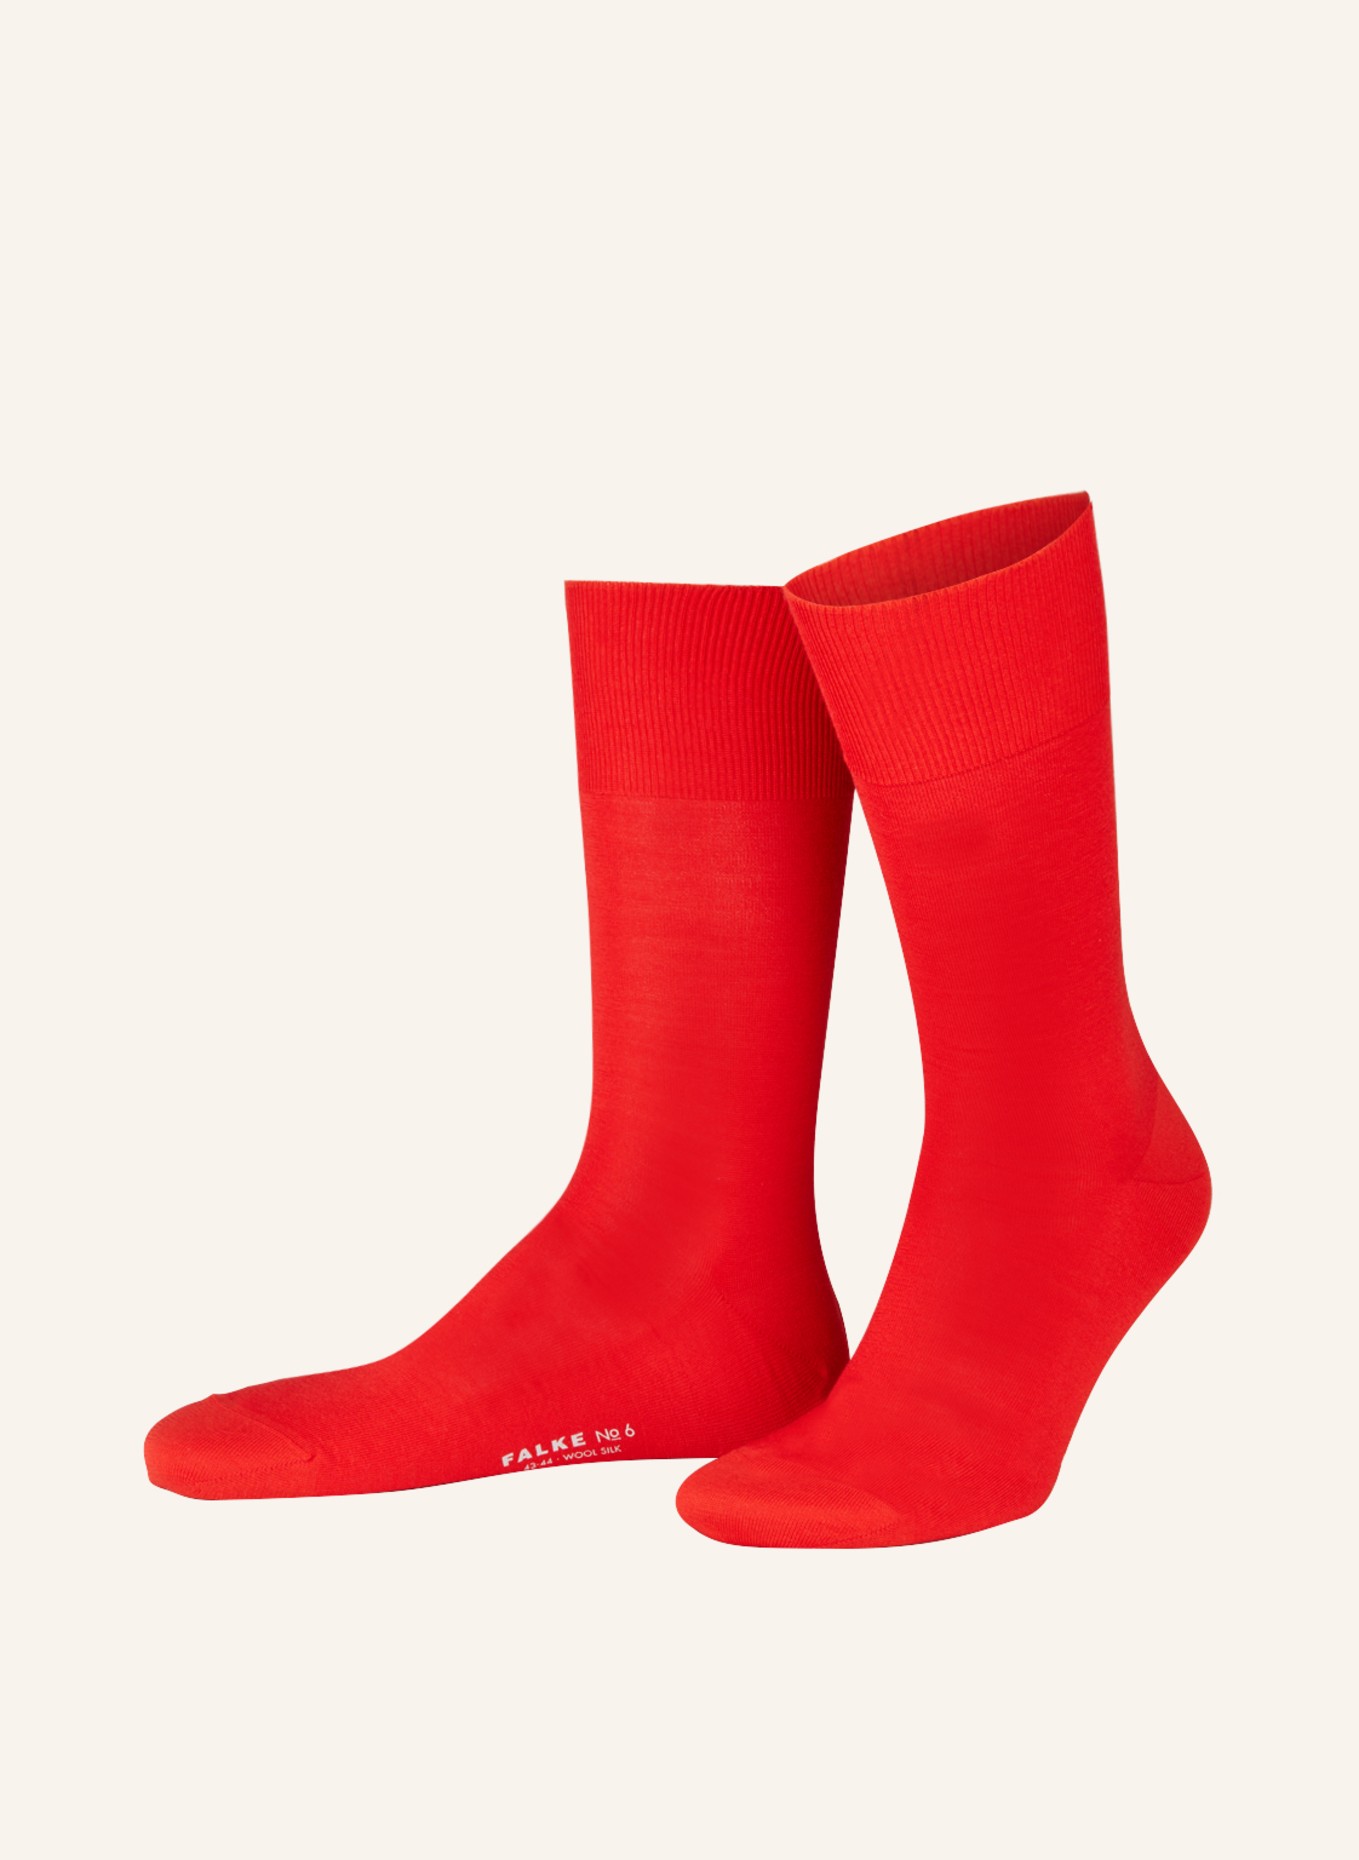 FALKE Socken LUXURY NO. 6 , Farbe: 8156 cardinal (Bild 1)